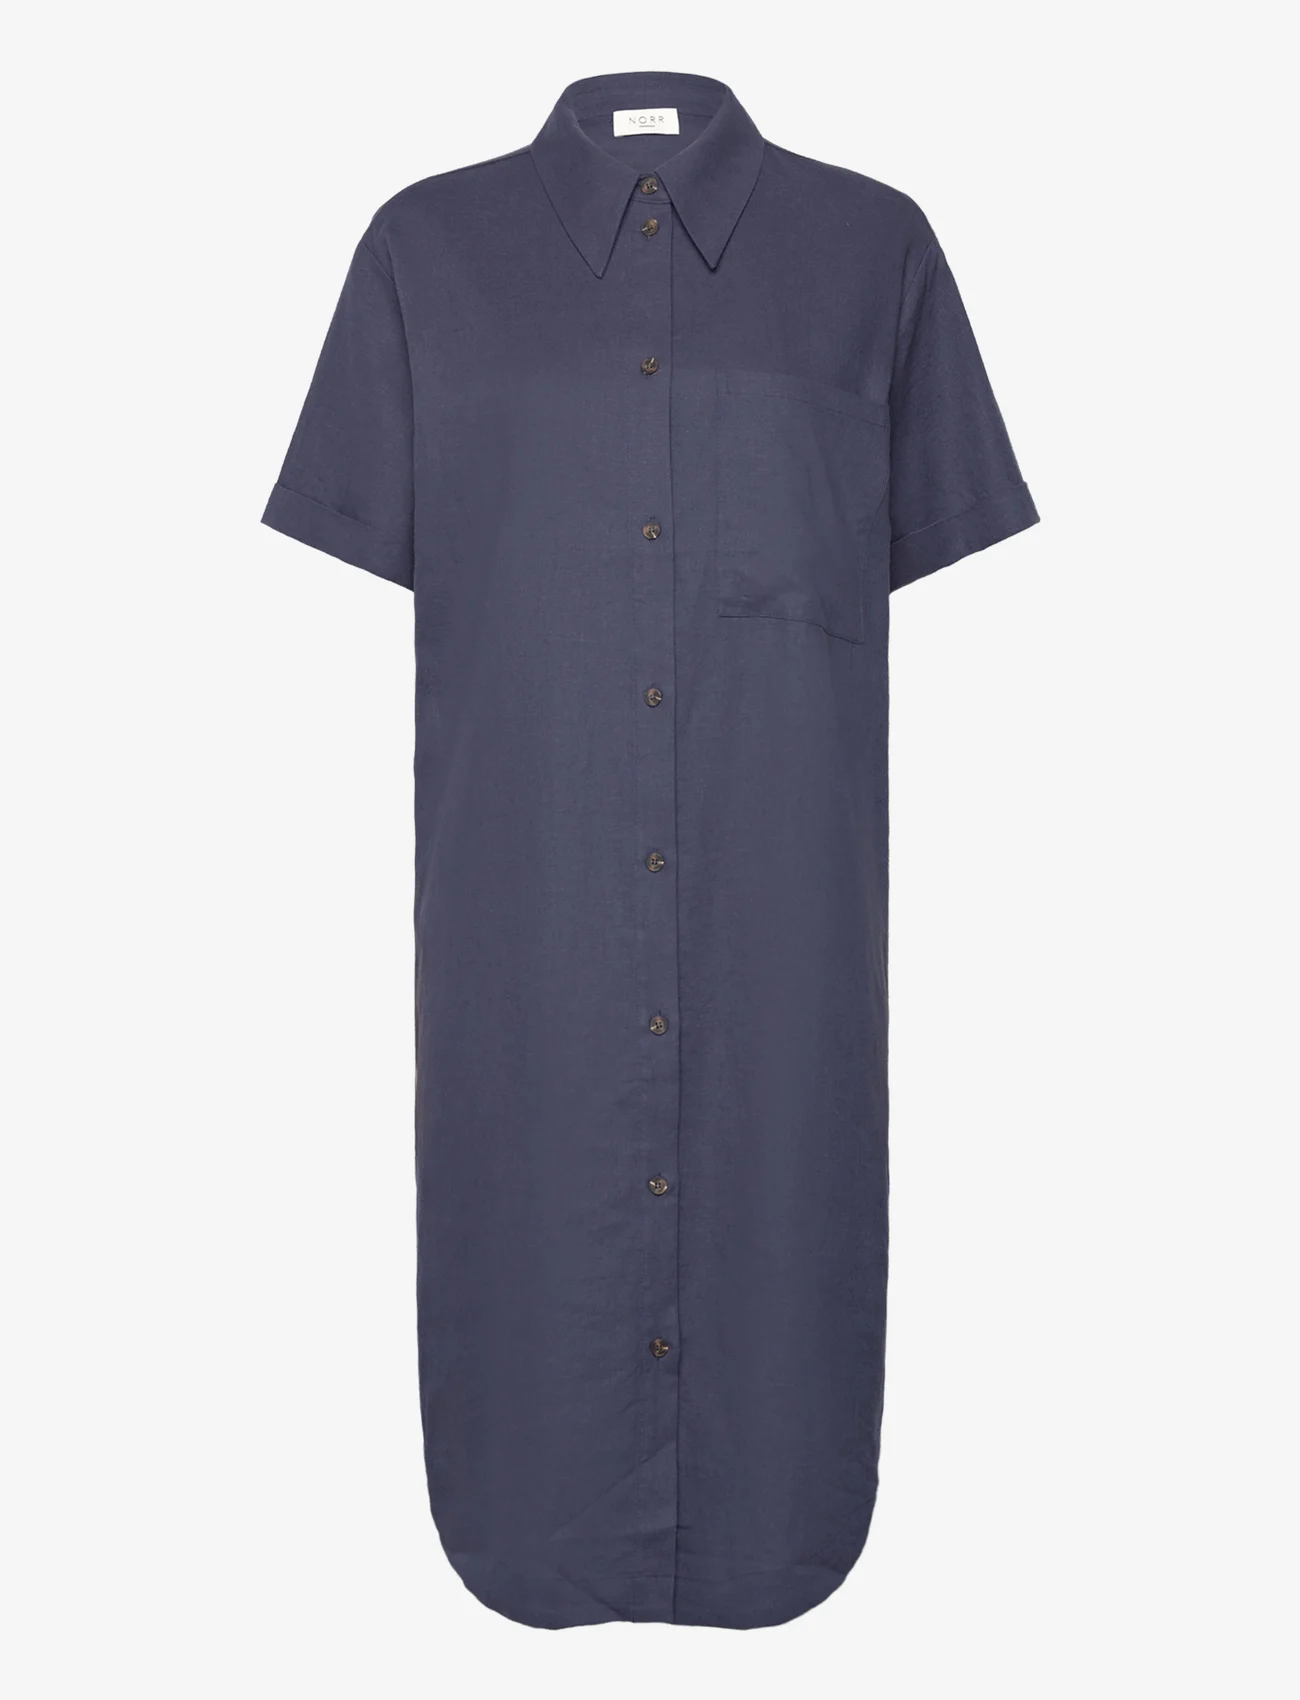 NORR - Esma shirt dress - skjortekjoler - blue - 0